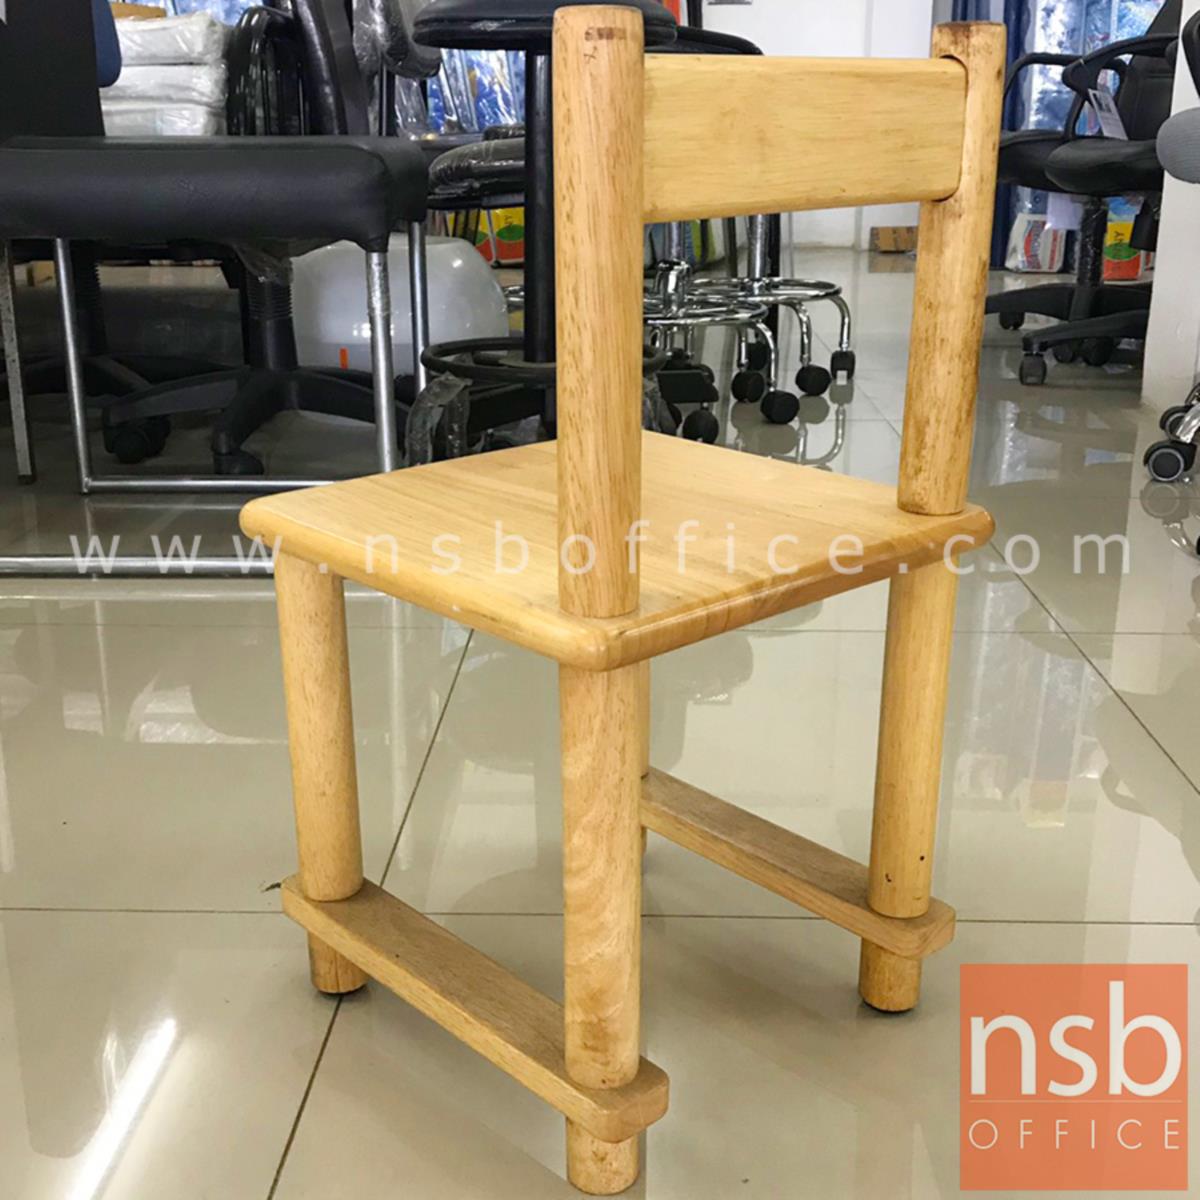 เก้าอี้เด็กไม้ล้วน รุ่น NSB-KID5 ขนาด 29W*52H cm. (STOCK-1 ตัว)